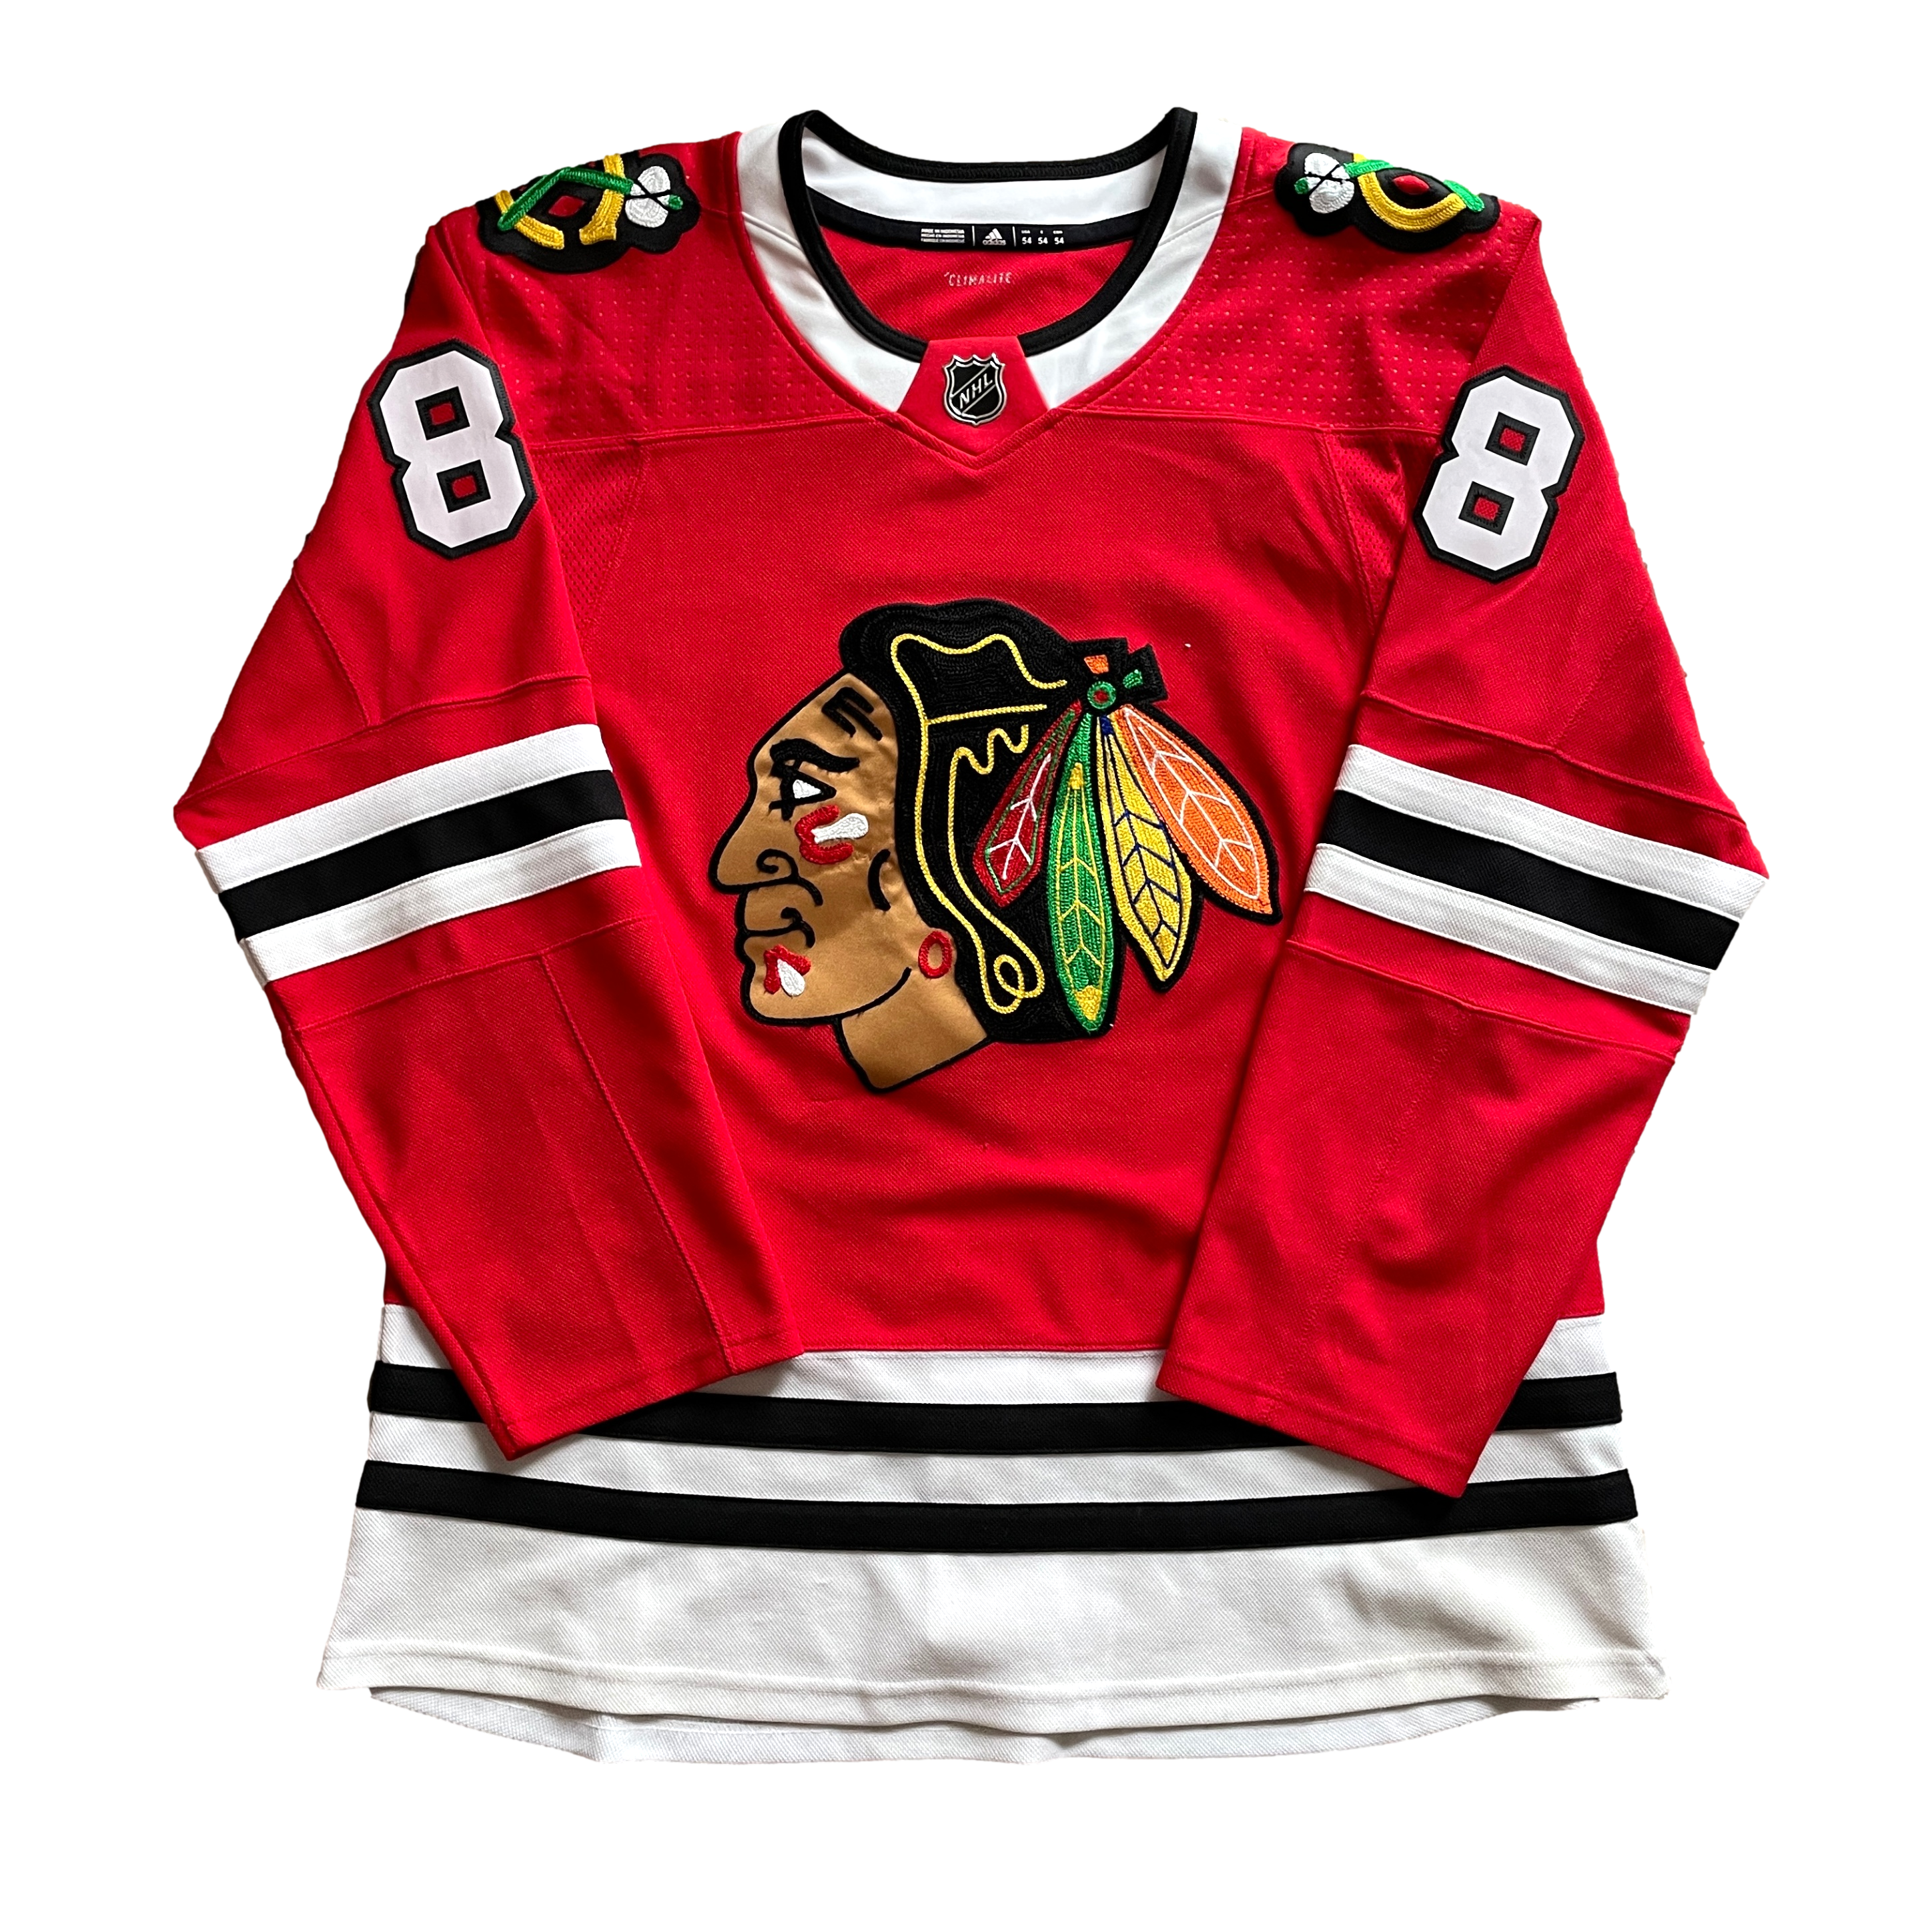 Chicago Blackhawks NHL Hockey Jersey (54)